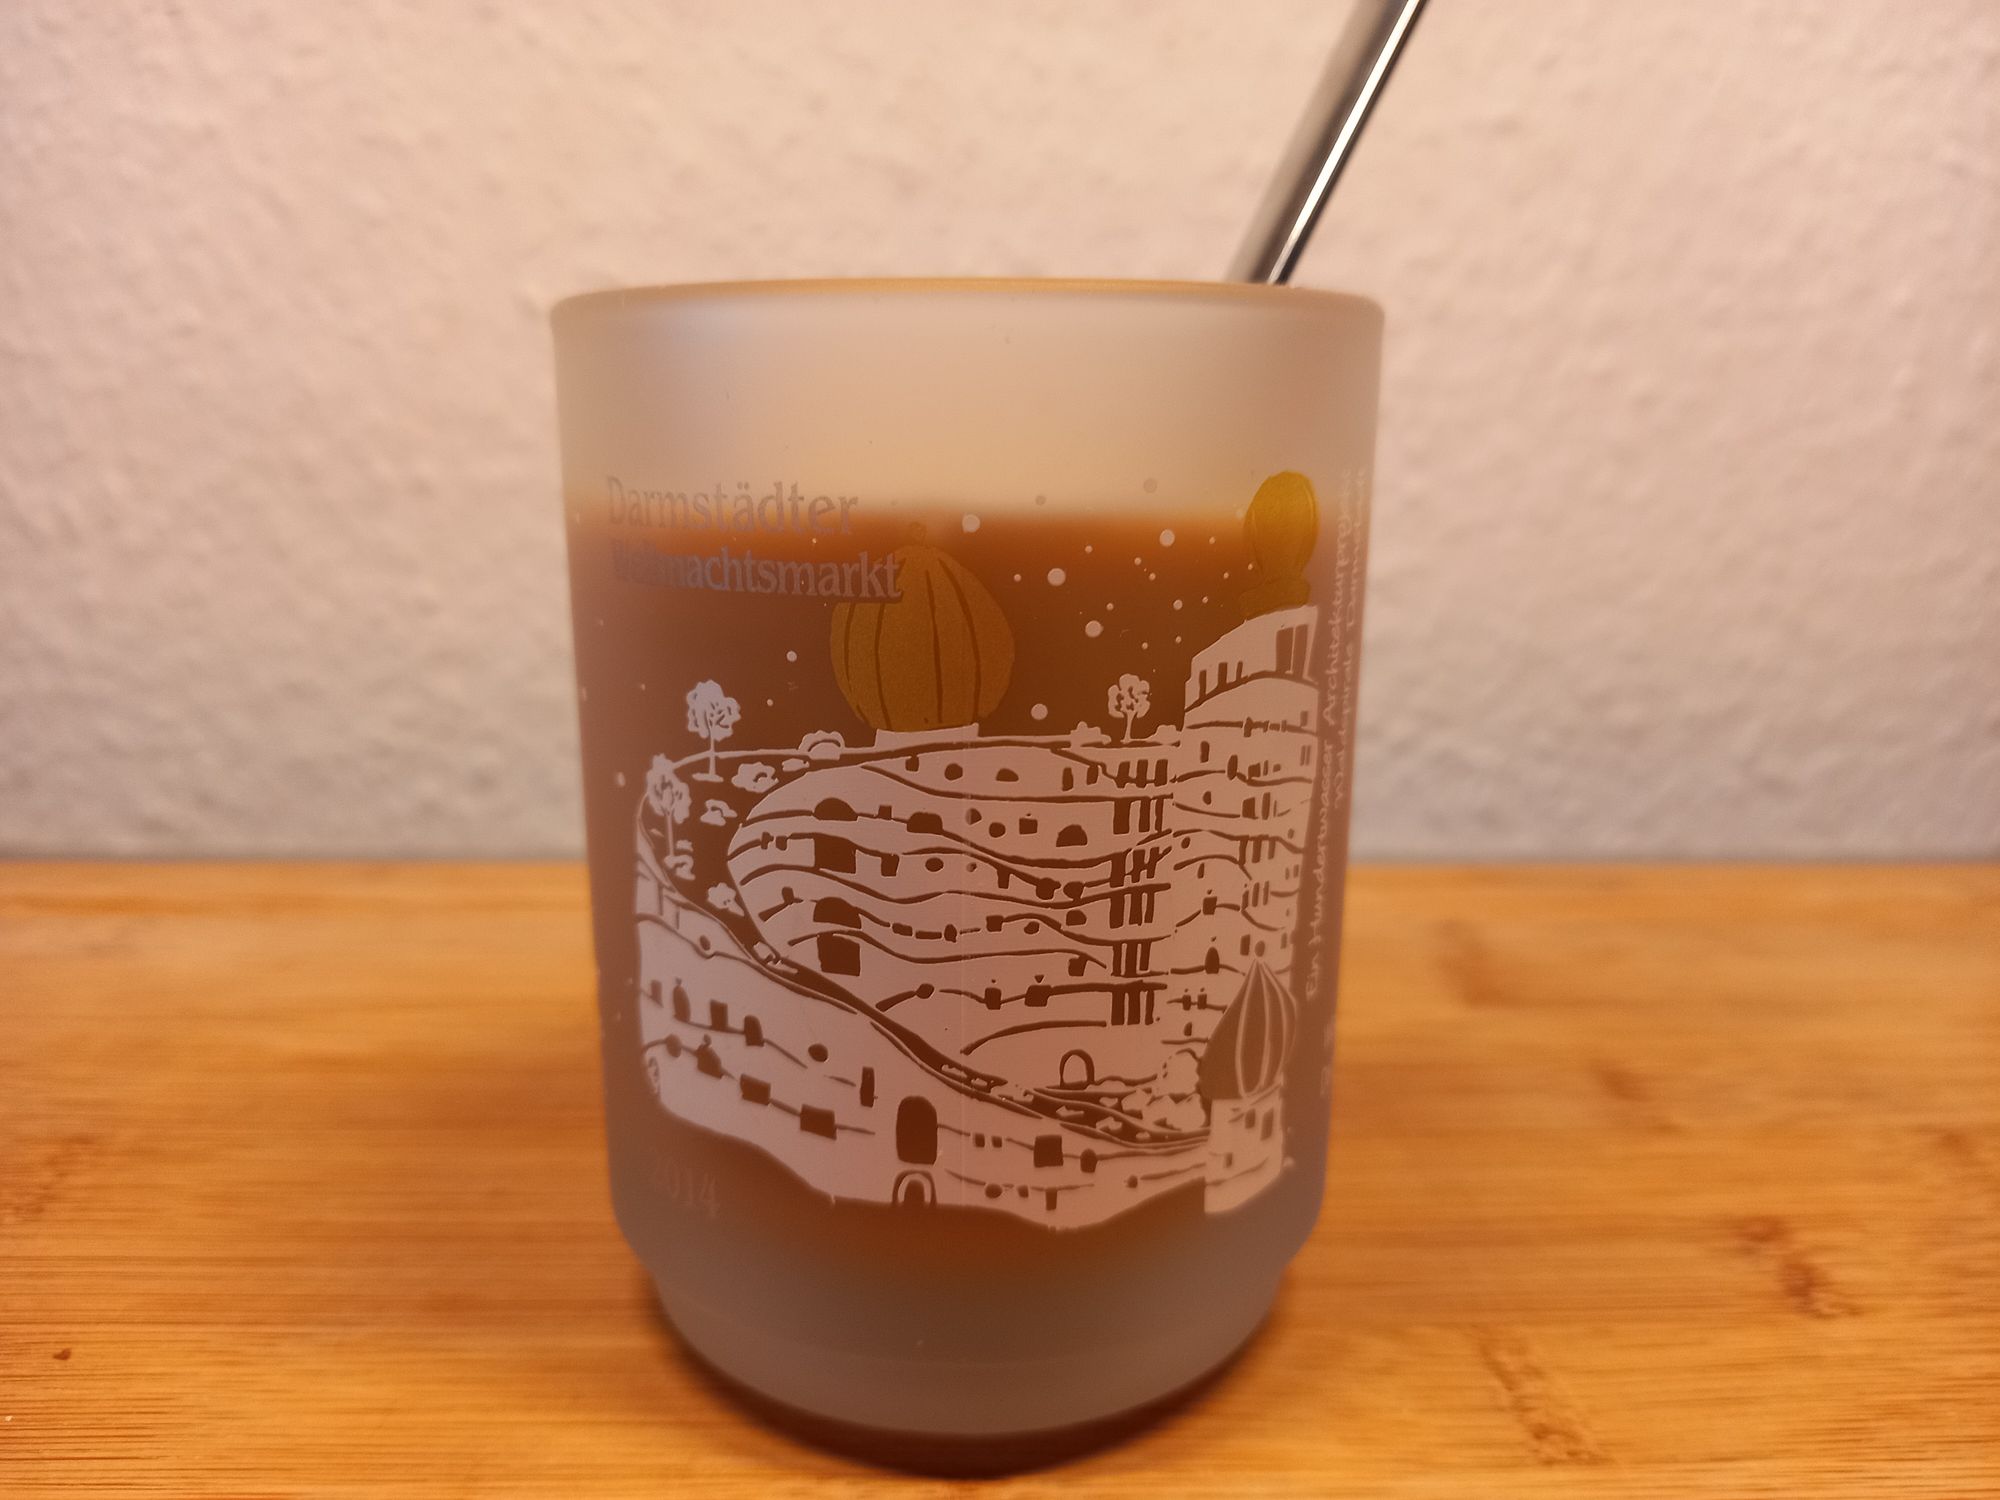 Die Tasse vom Weihnachtsmarkt Darmstadt zeigt das Hundertwasserhaus